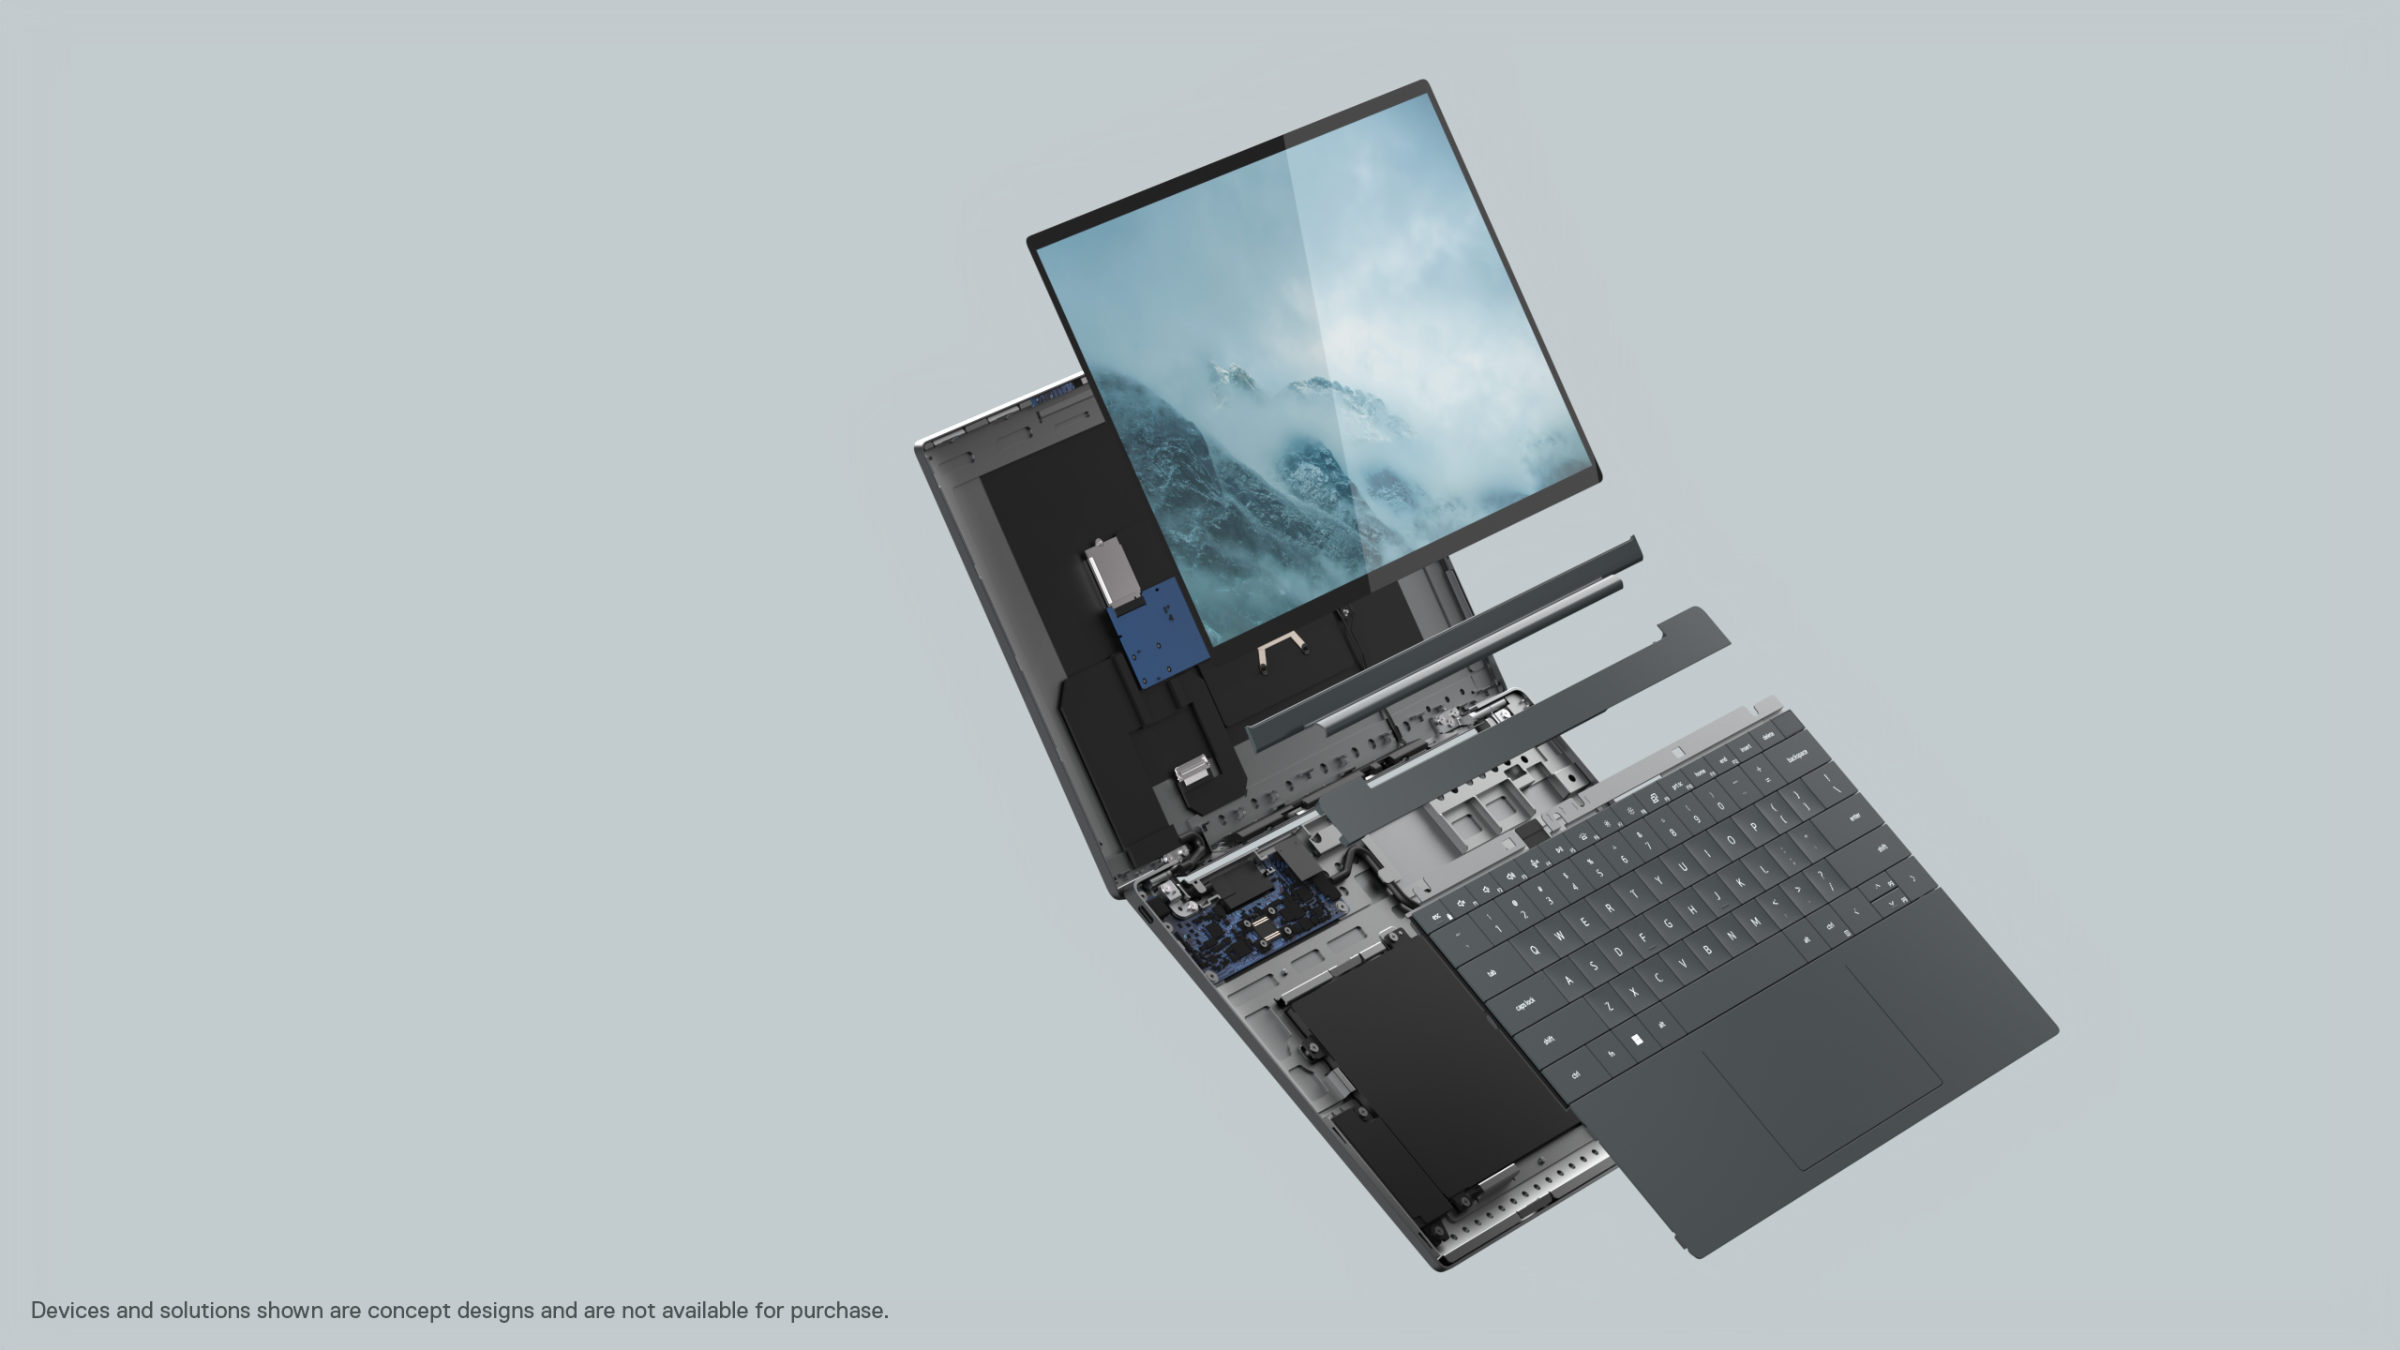 Avec le Concept Luna, Dell veut proposer le premier PC Portable modulable et évolutif. © Dell